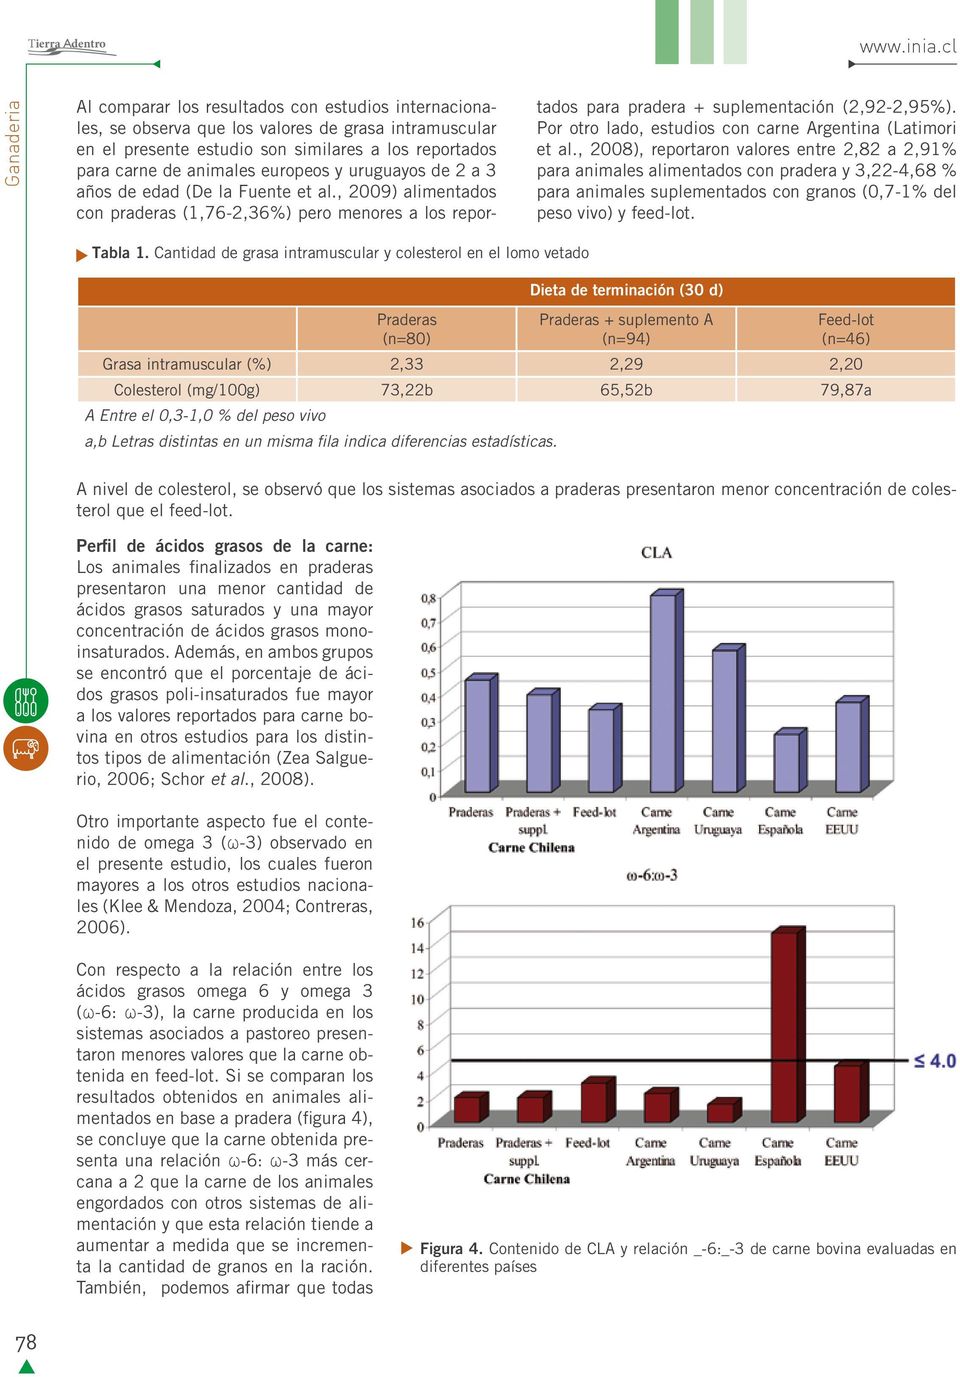 uruguayos de 2 a 3 años de edad (De la Fuente et al., 2009) alimentados con praderas (1,76-2,36%) pero menores a los reportados para pradera + suplementación (2,92-2,95%).